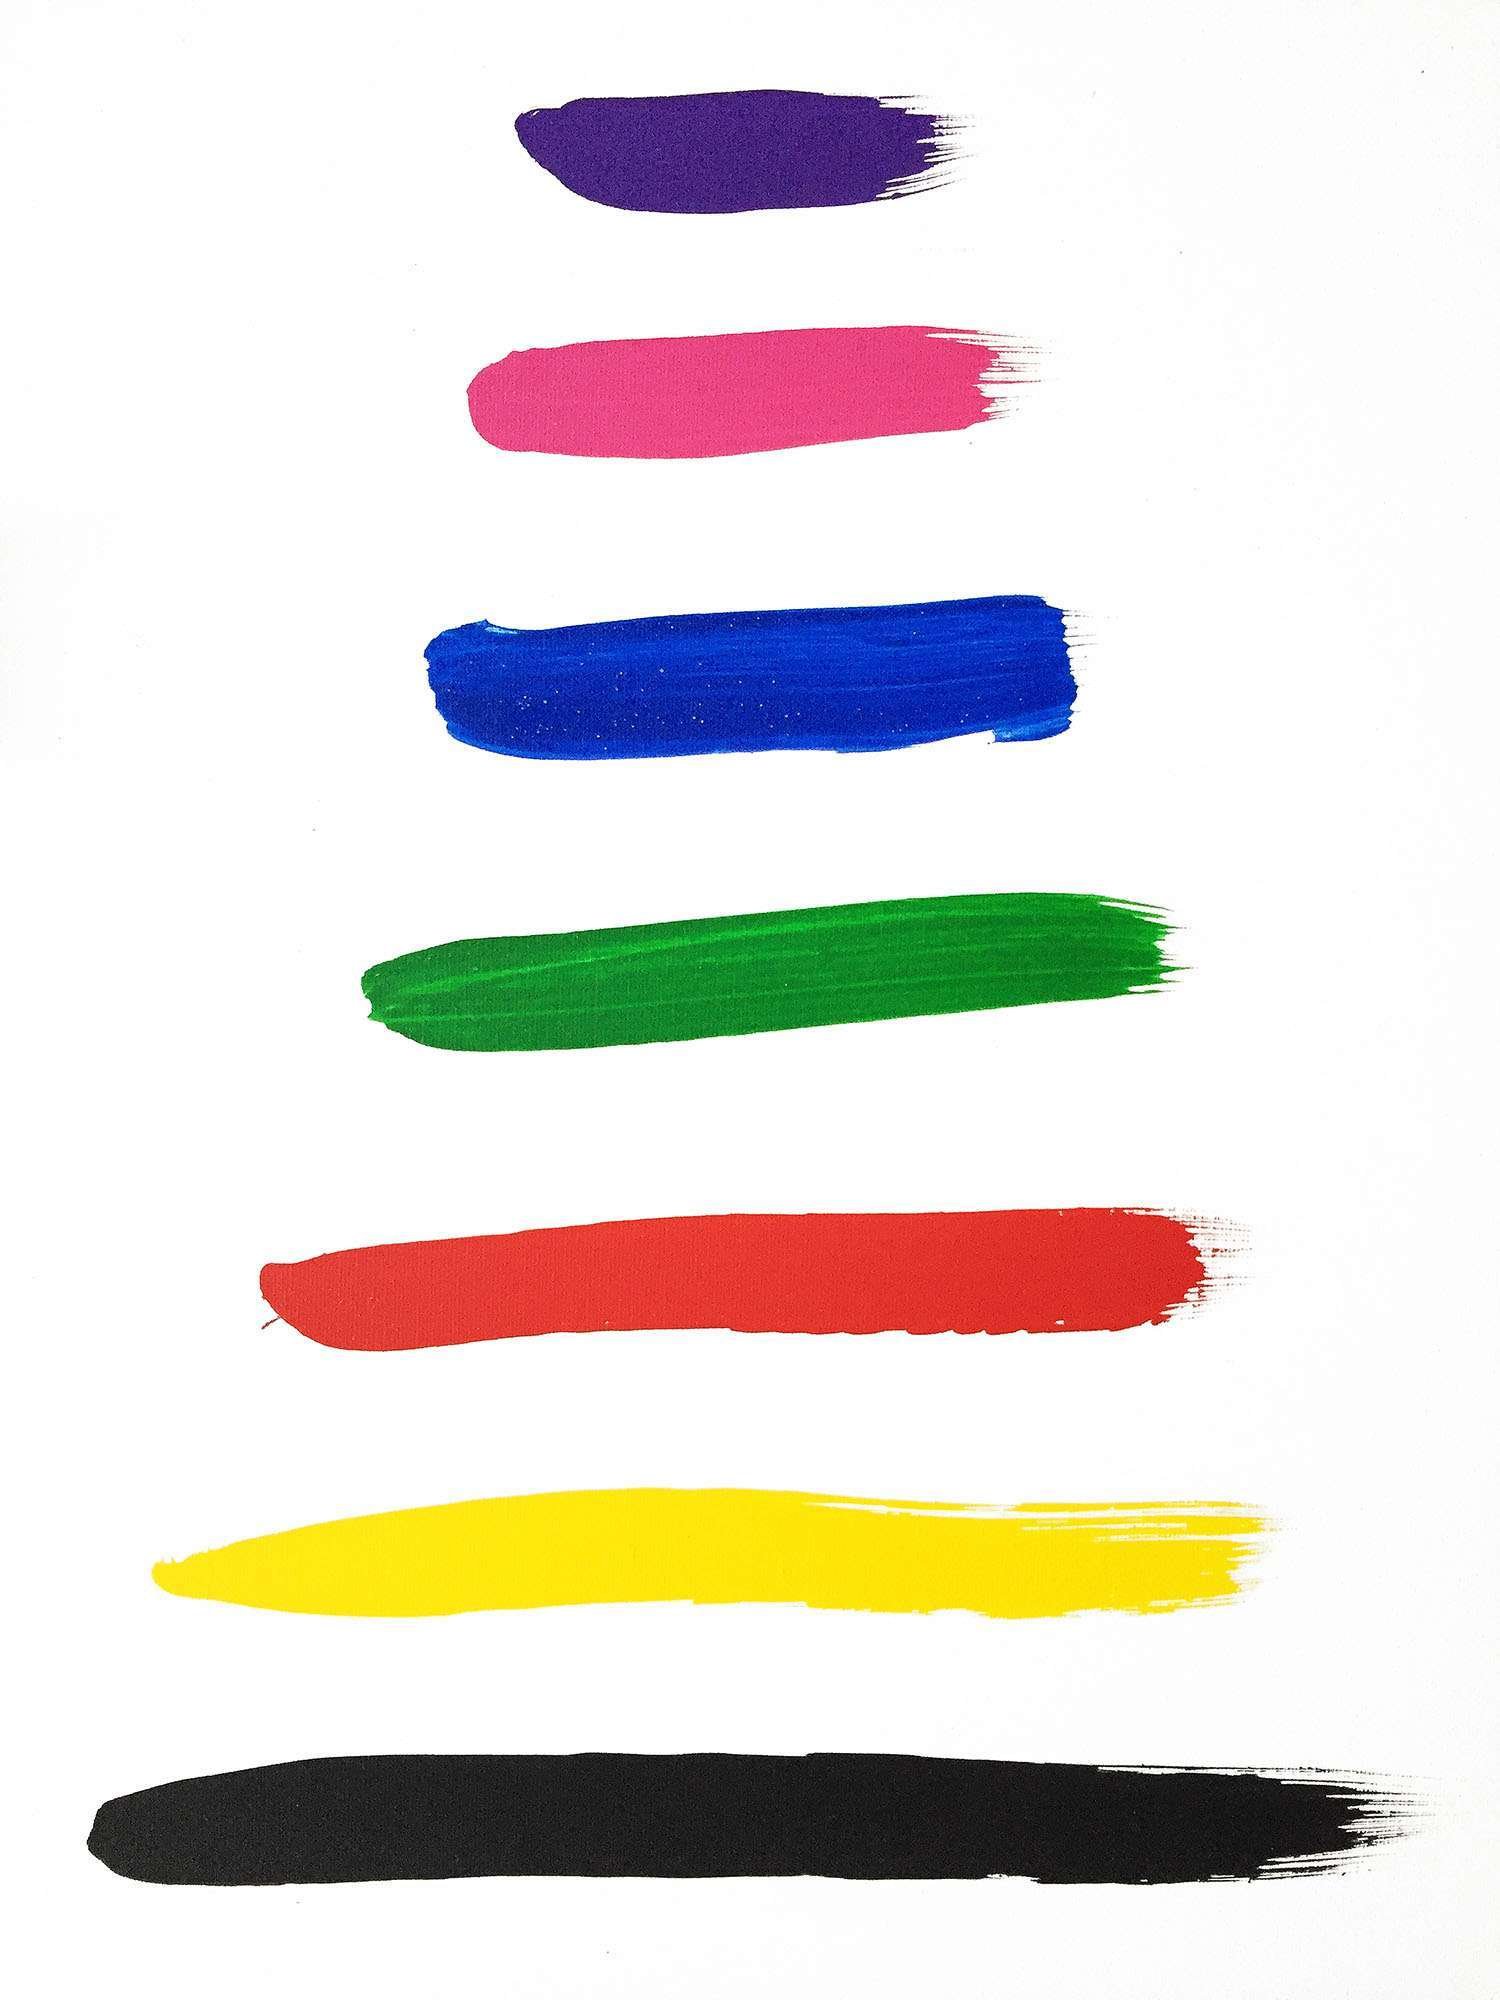 Miroslavo's colour palette